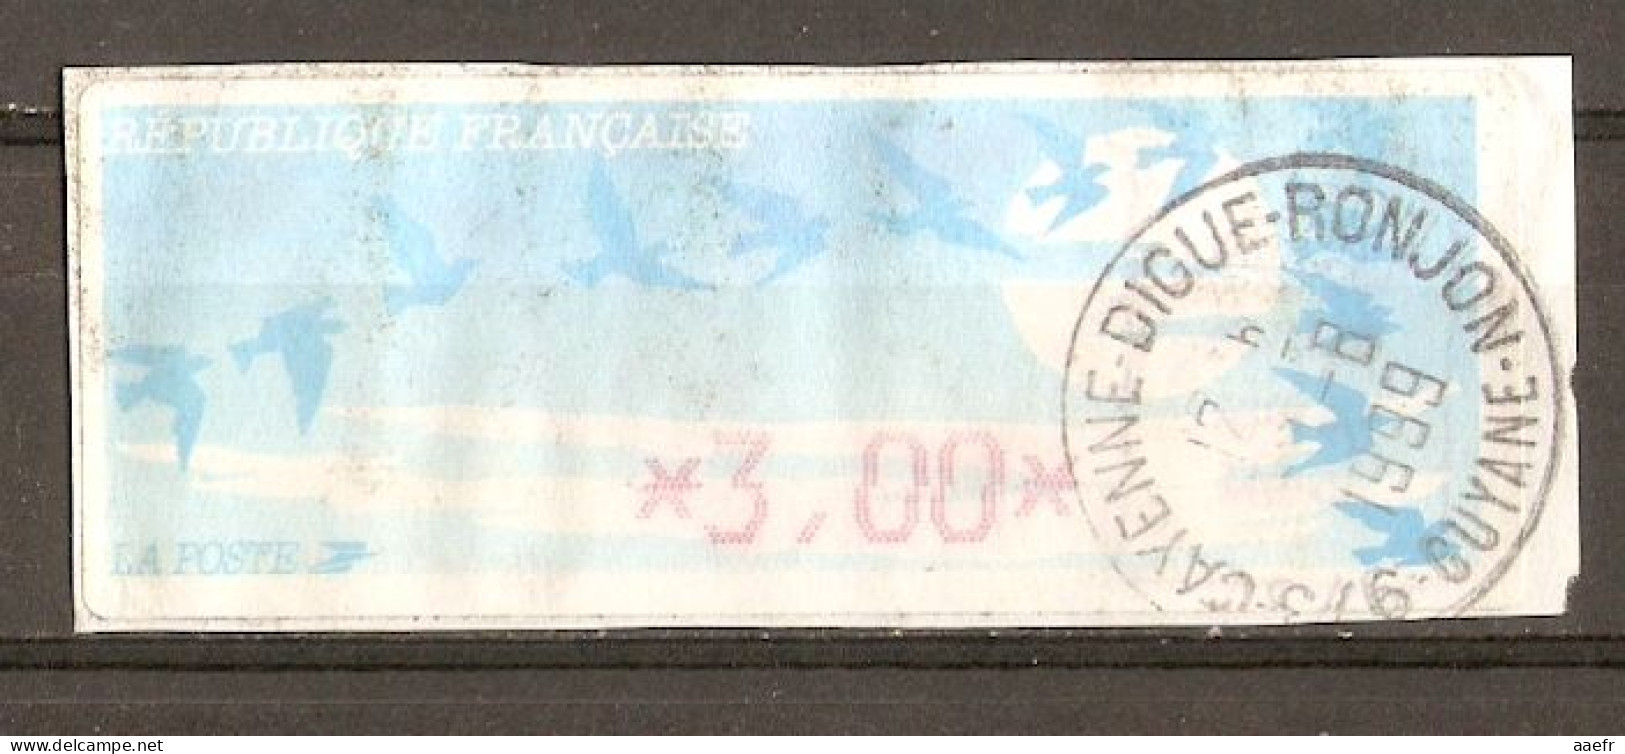 France - Guyane 1999 - Vignette ATM Type Oiseaux De Joubert - Cayenne - Digue-Ronjon - 1990 « Oiseaux De Jubert »